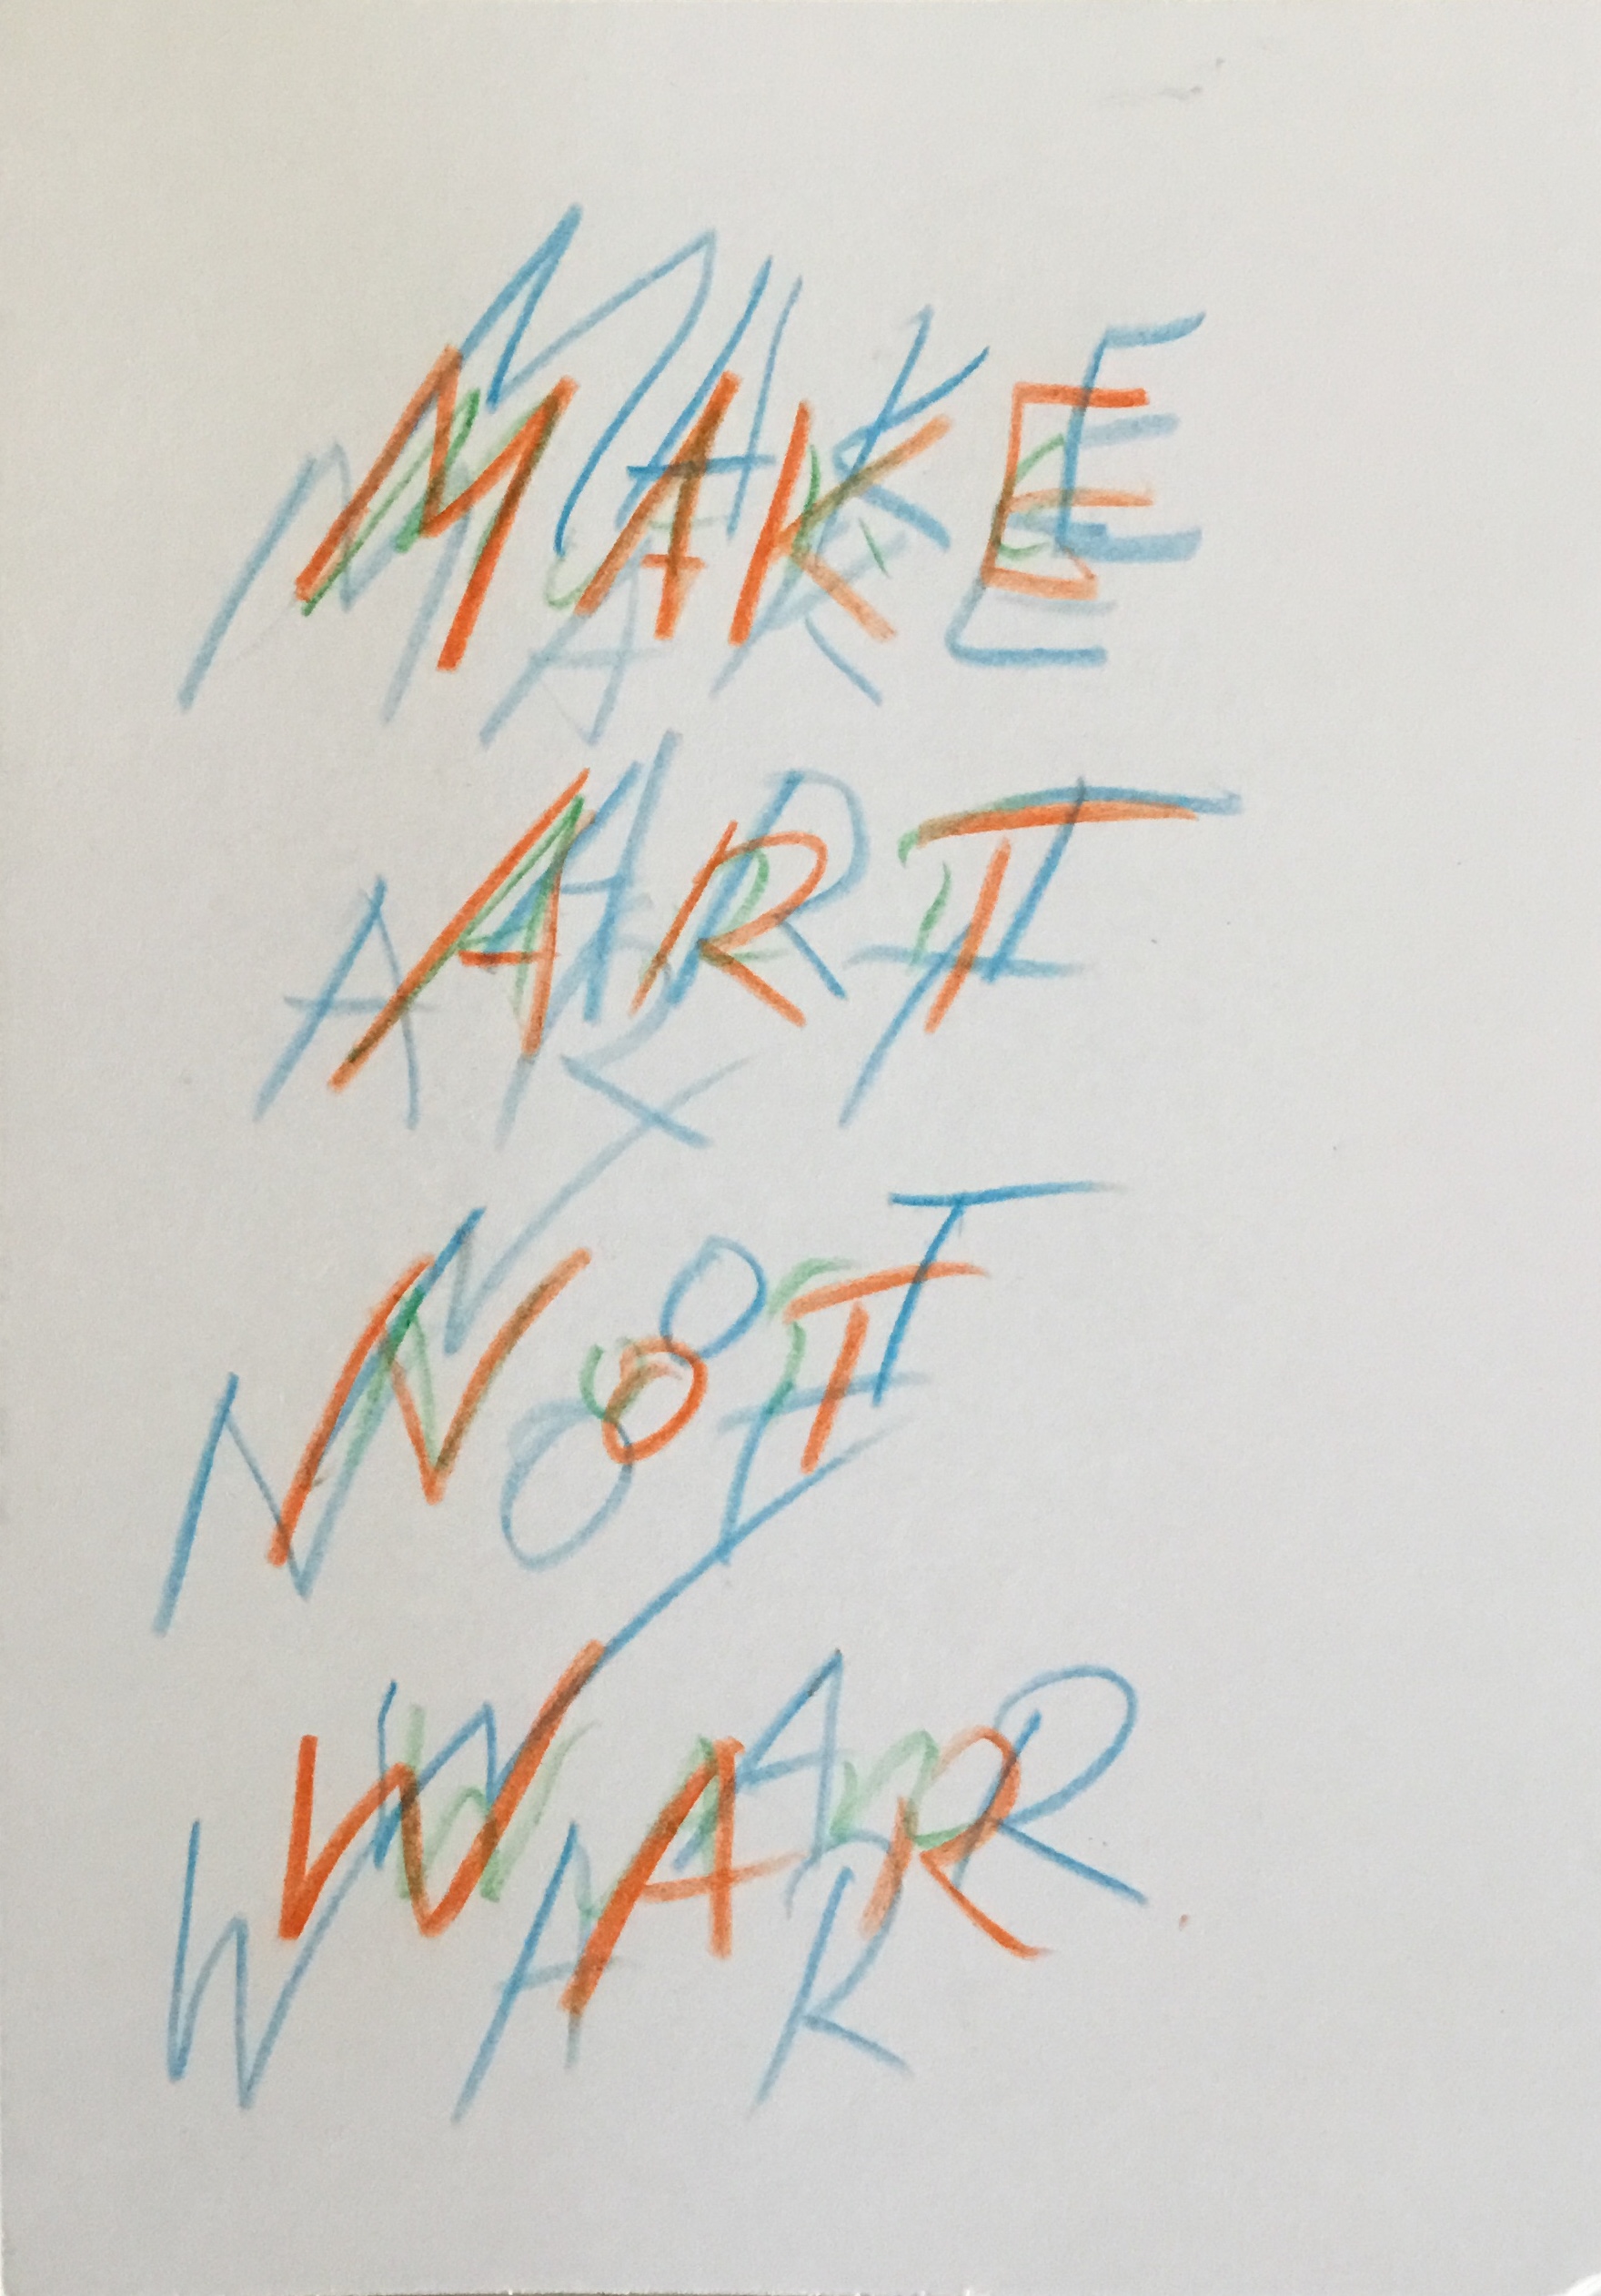 036 make art not war.JPG